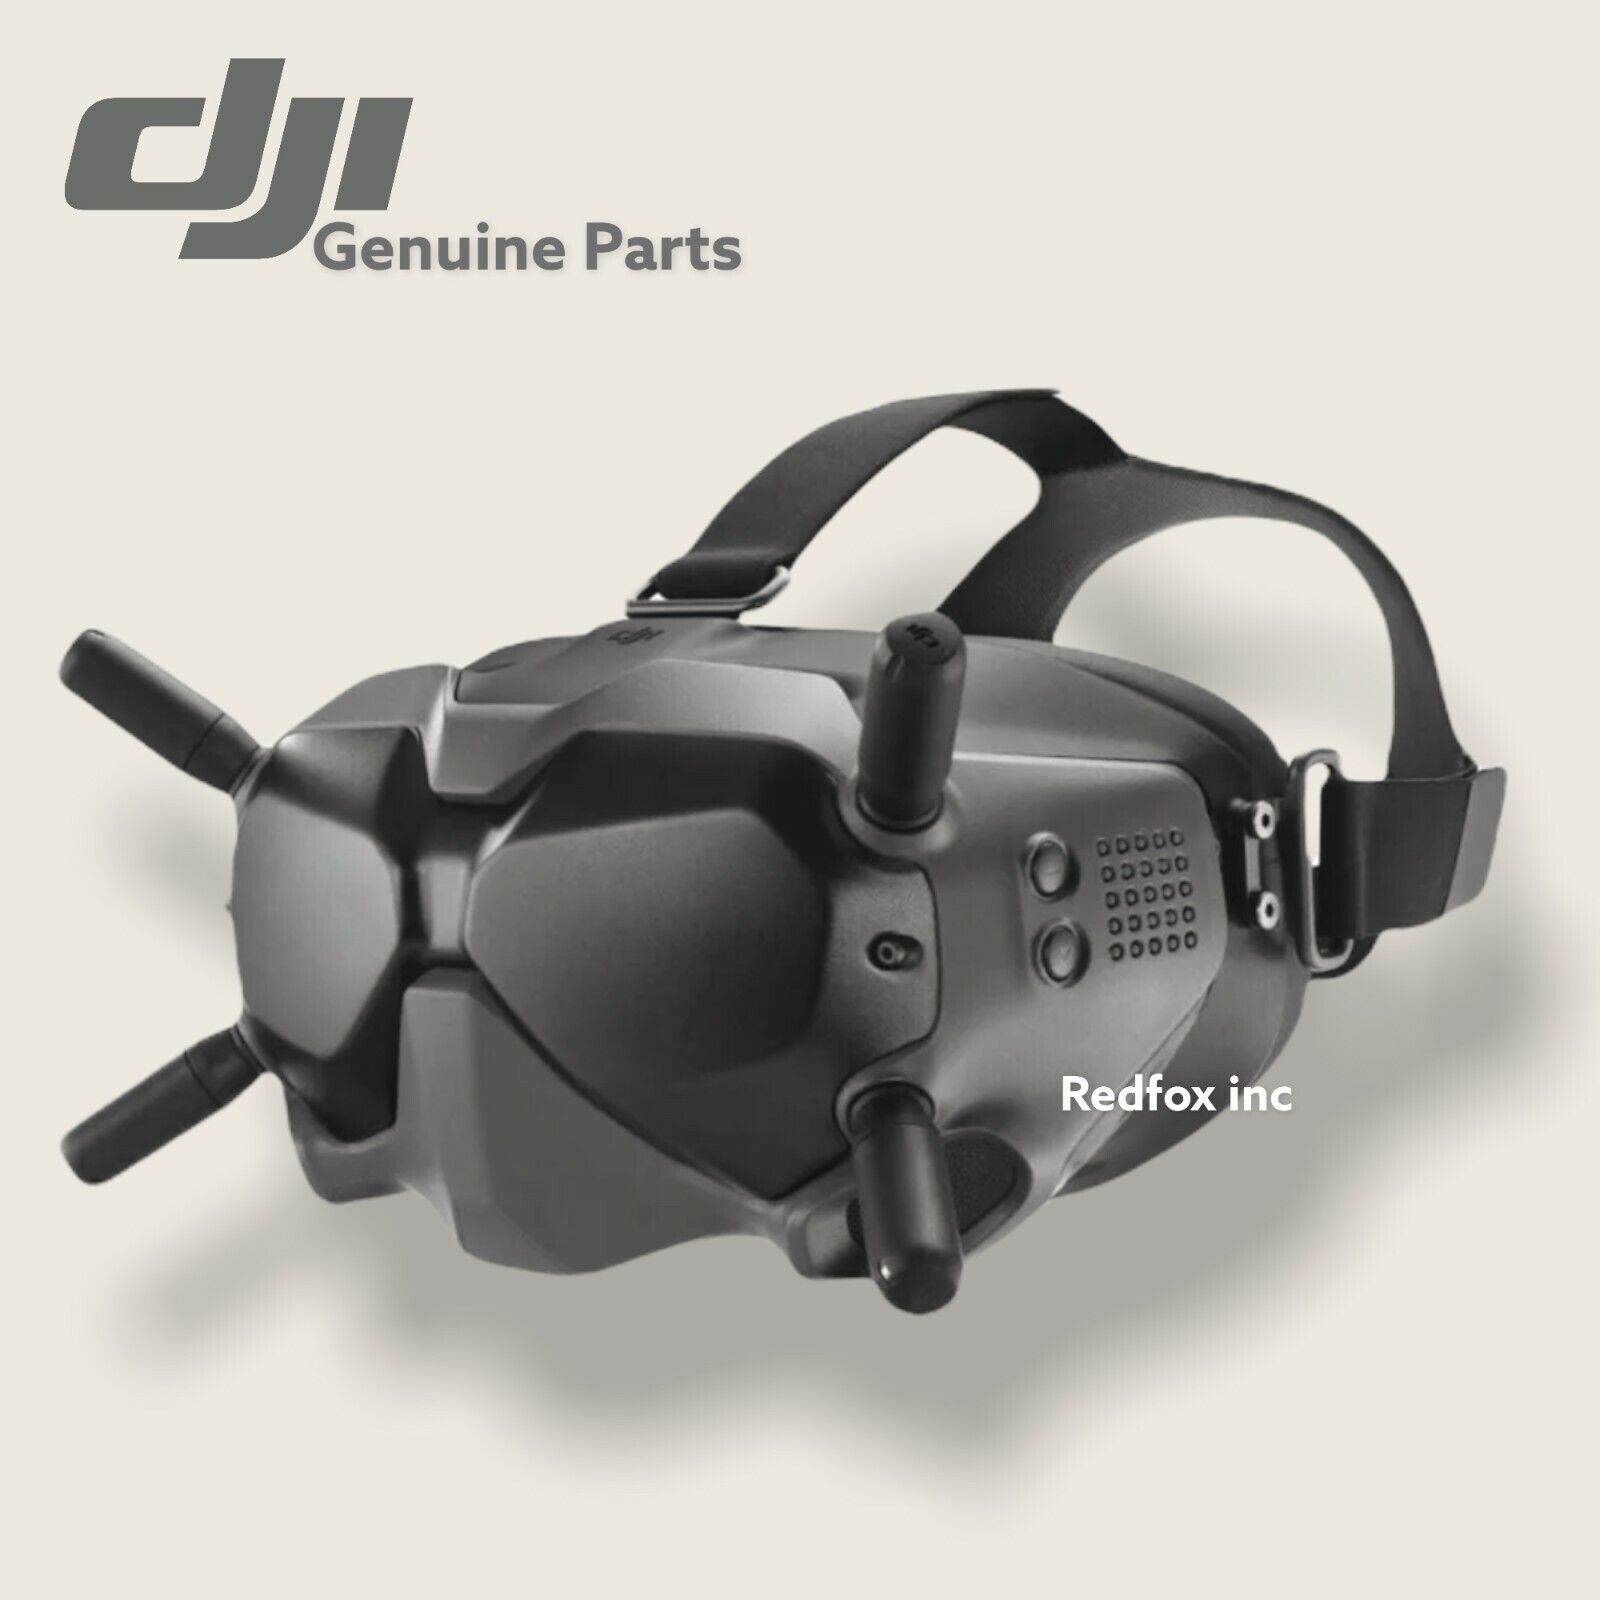 DJI FPV Drone Goggles V2- Authentic New Version